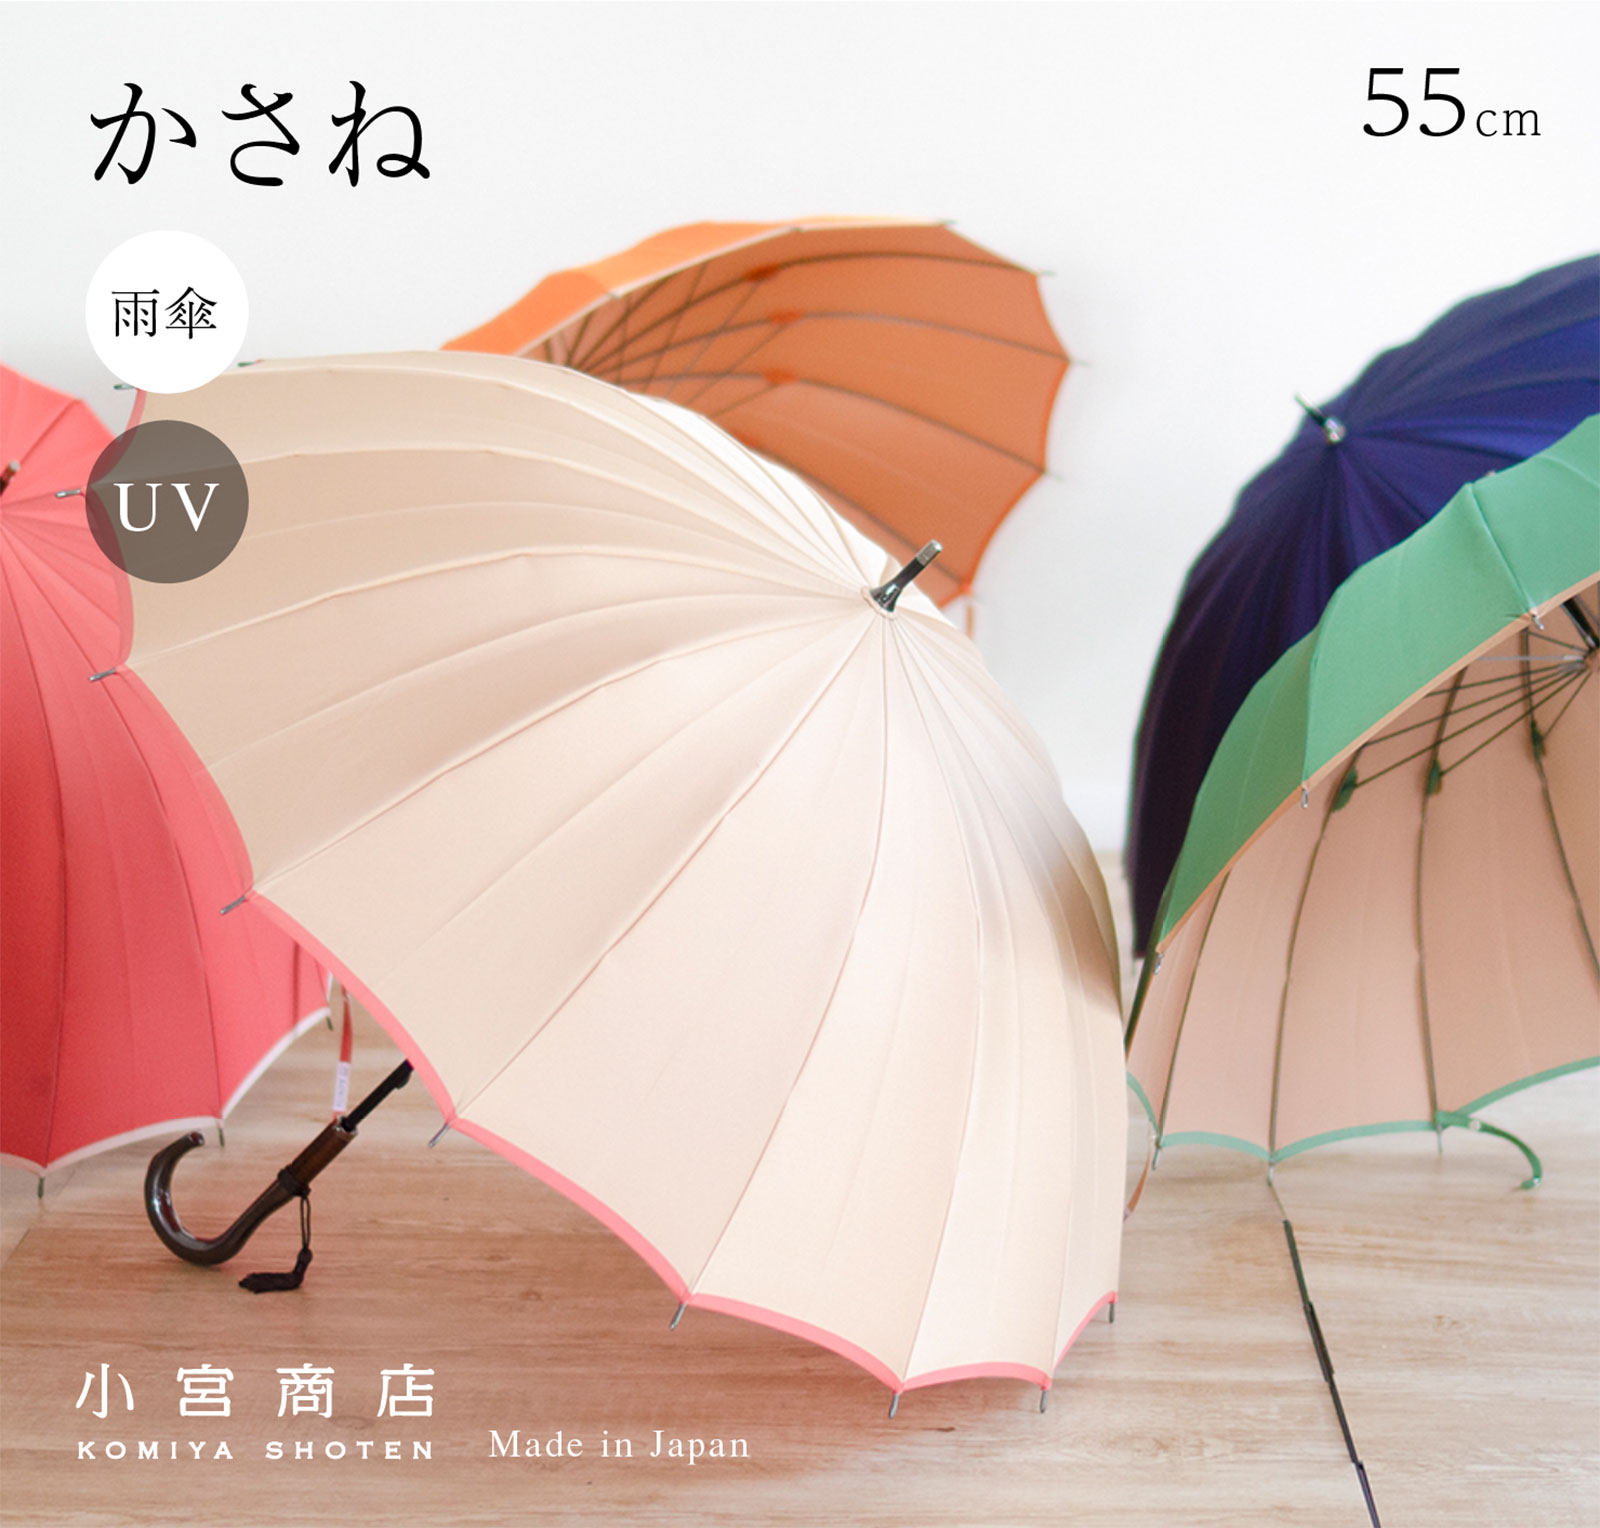 傘 レディース 16本骨 おしゃれ ブランド 長傘 かさ 軽い 雨傘 日傘 丈夫な傘 55cm 「甲州織 かさね」 日本製 軽量 丈夫 カーボン 耐風  風に強い 大人 可愛い かわいい シンプル UVカット 雨晴兼用 晴雨兼用 和風 | 小宮商店